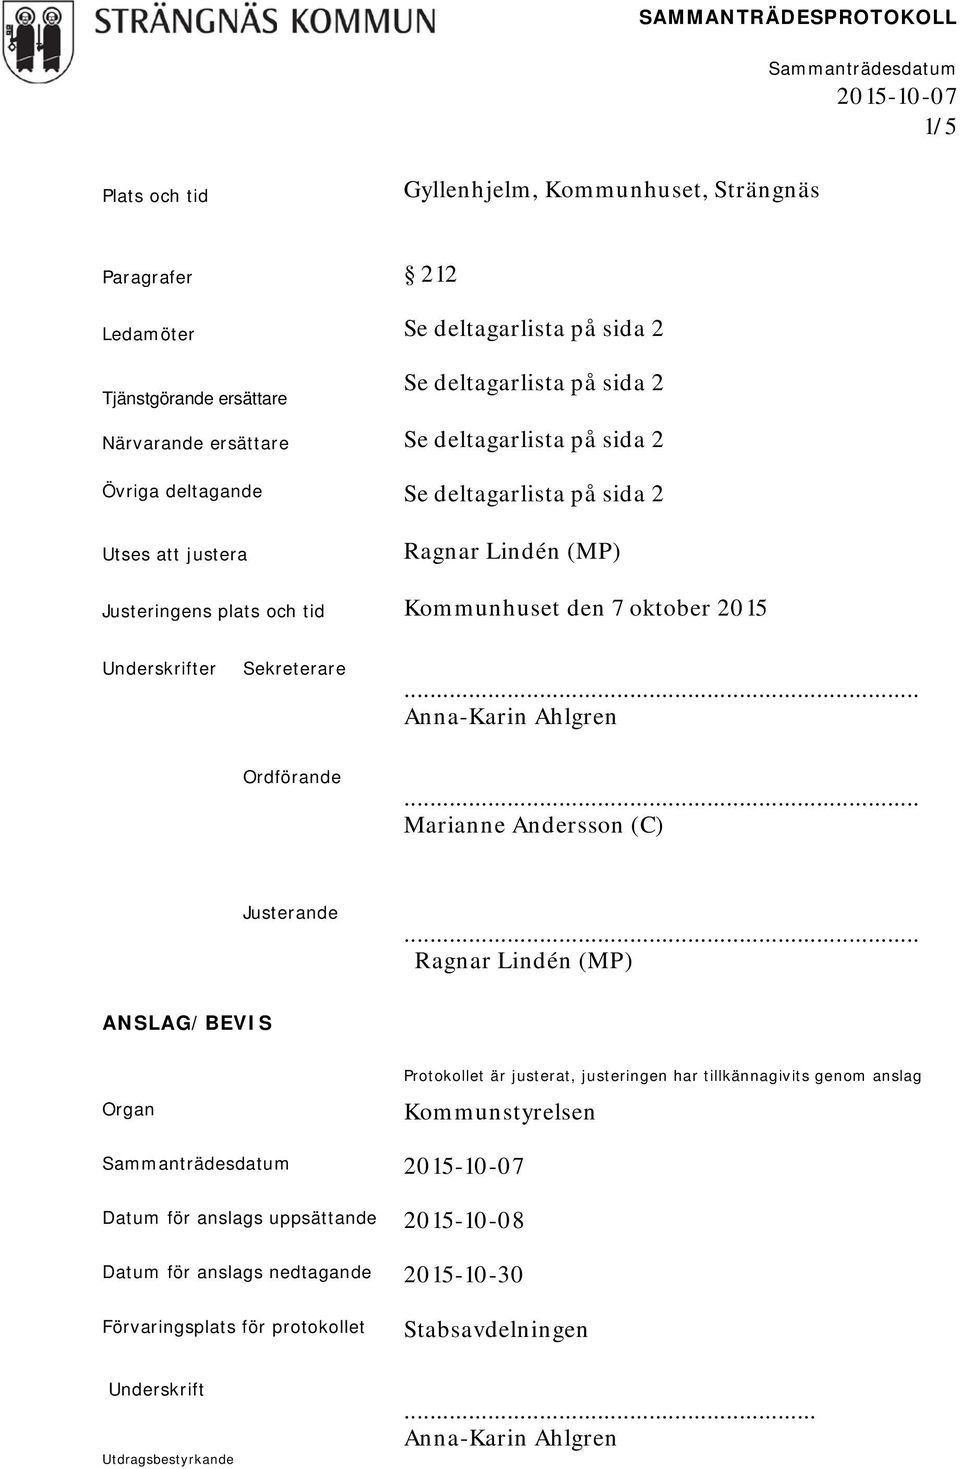 2015 Underskrifter Sekreterare Anna-Karin Ahlgren Ordförande Marianne Andersson (C) Justerande ANSLAG/BEVIS Organ Protokollet är justerat, justeringen har